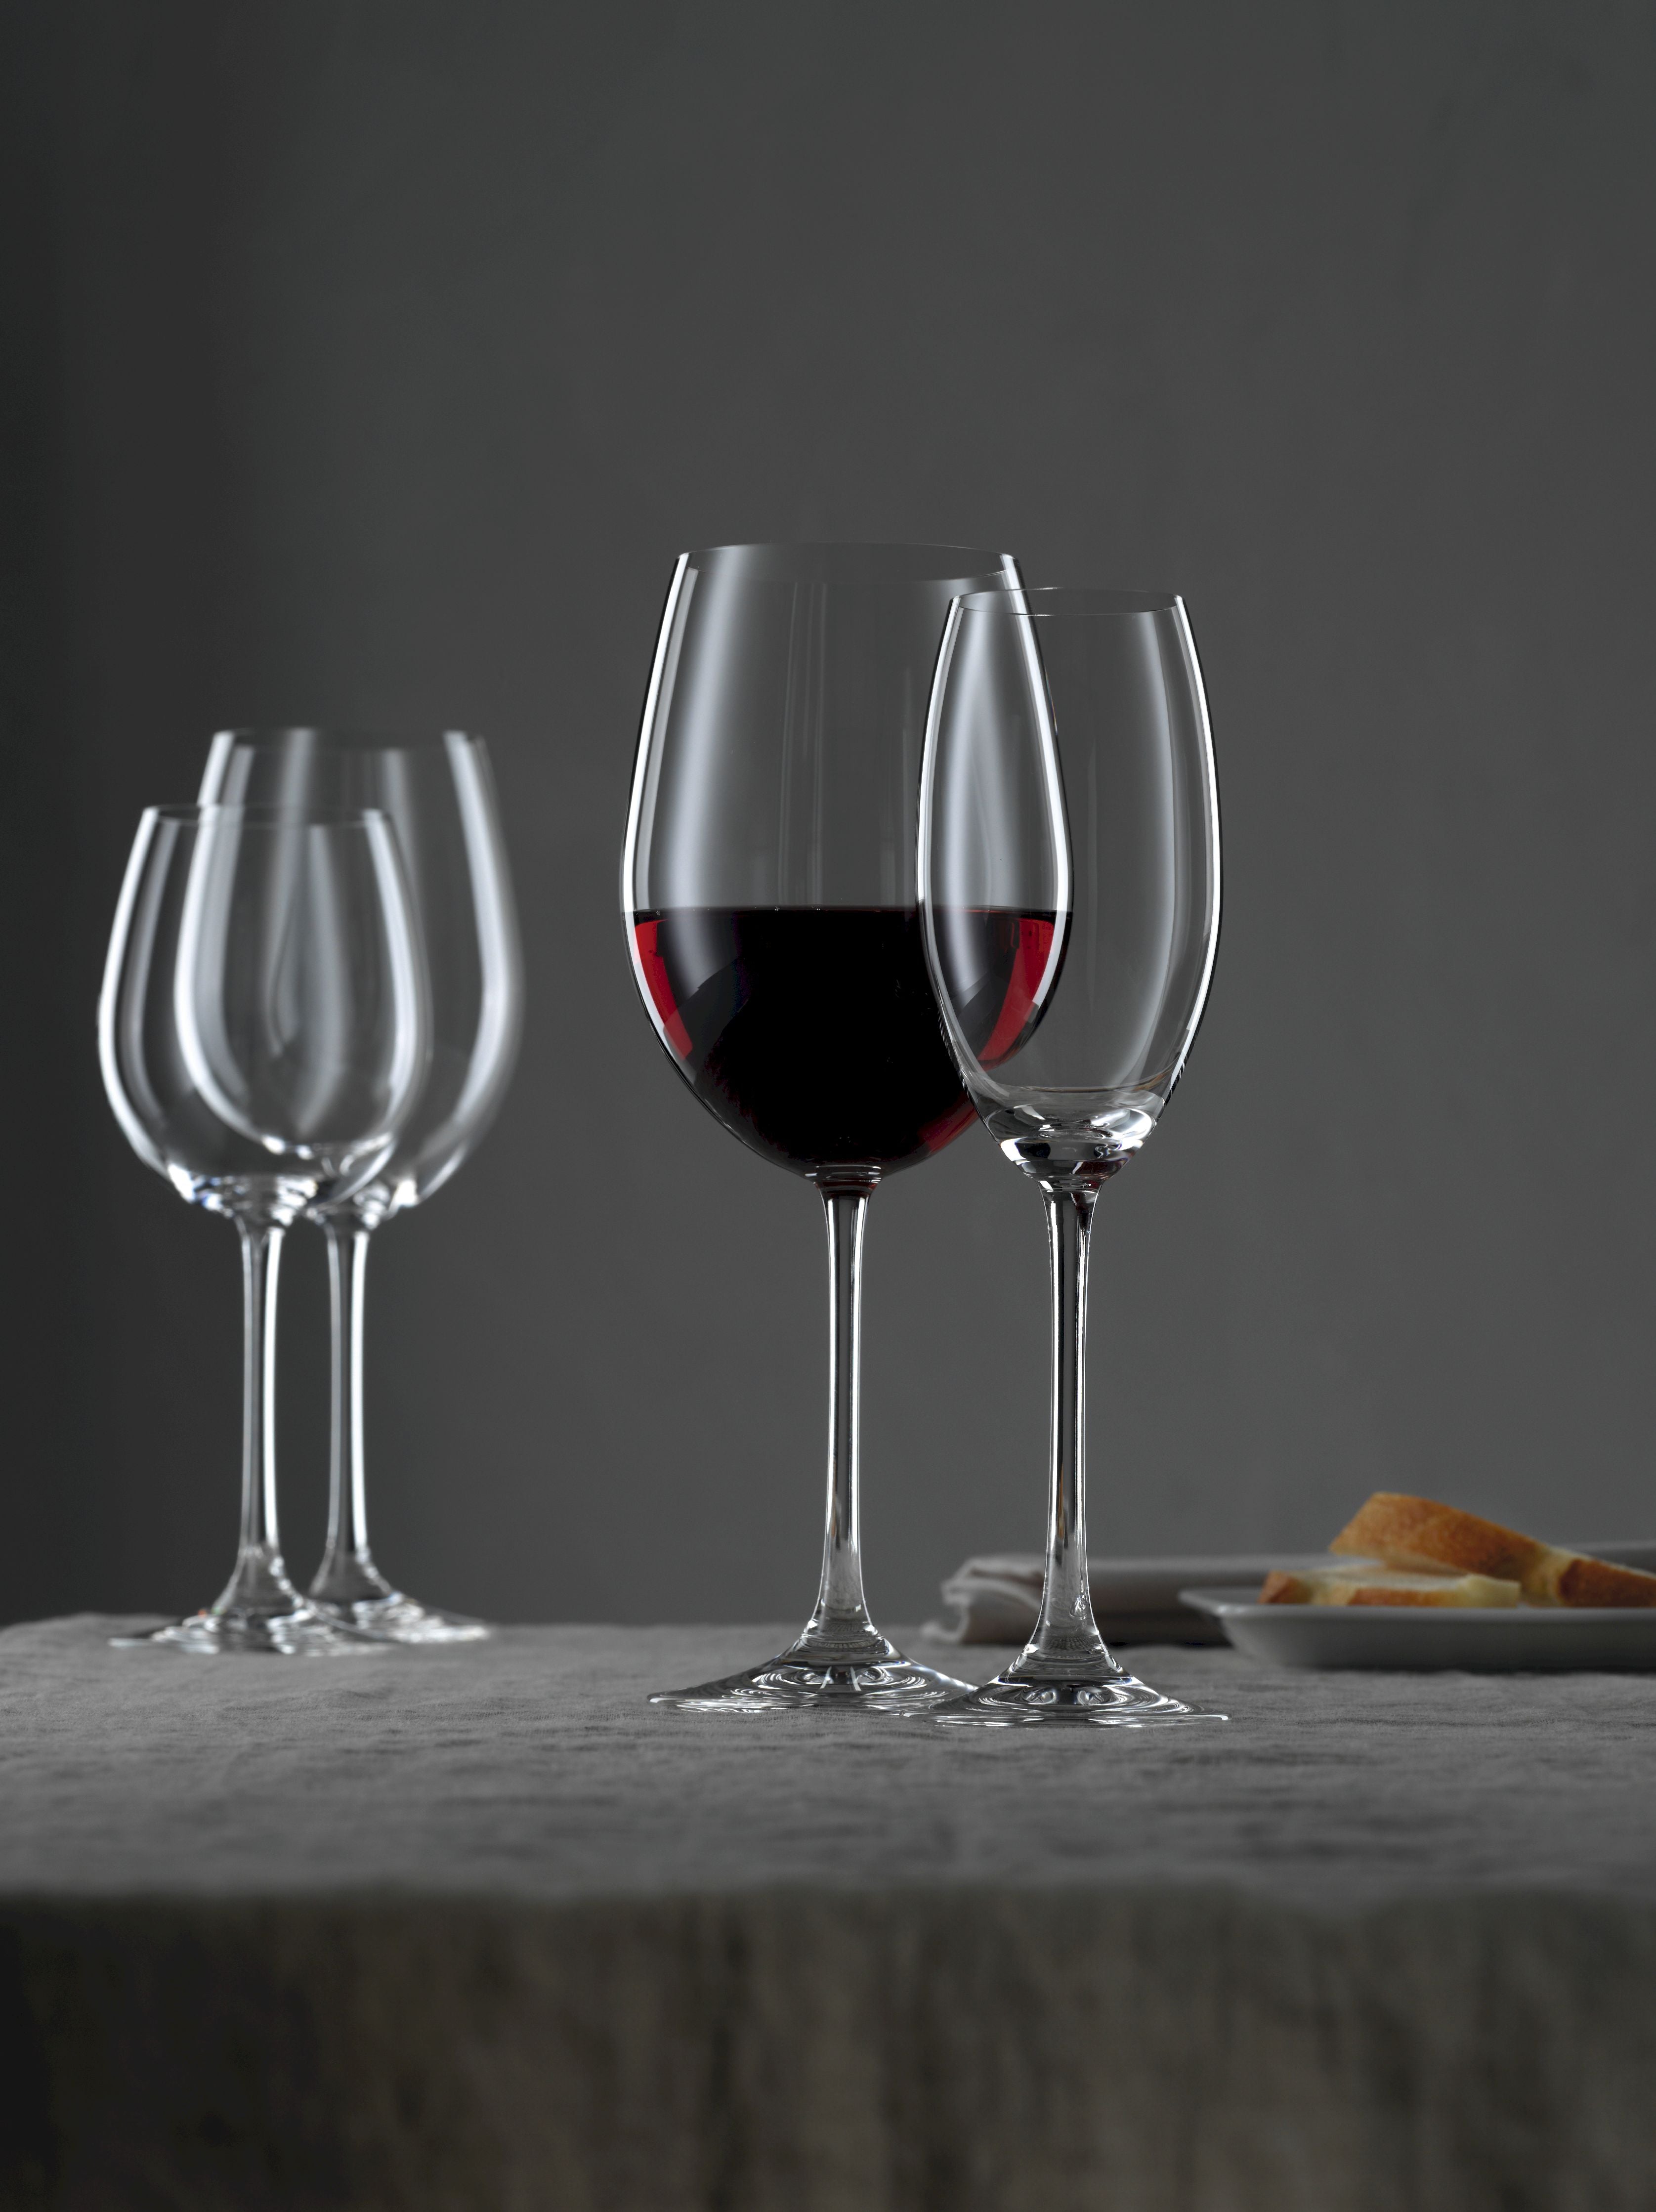 Nachtmann Vivendi Premium White Wine Glass 474 ml, set di 4